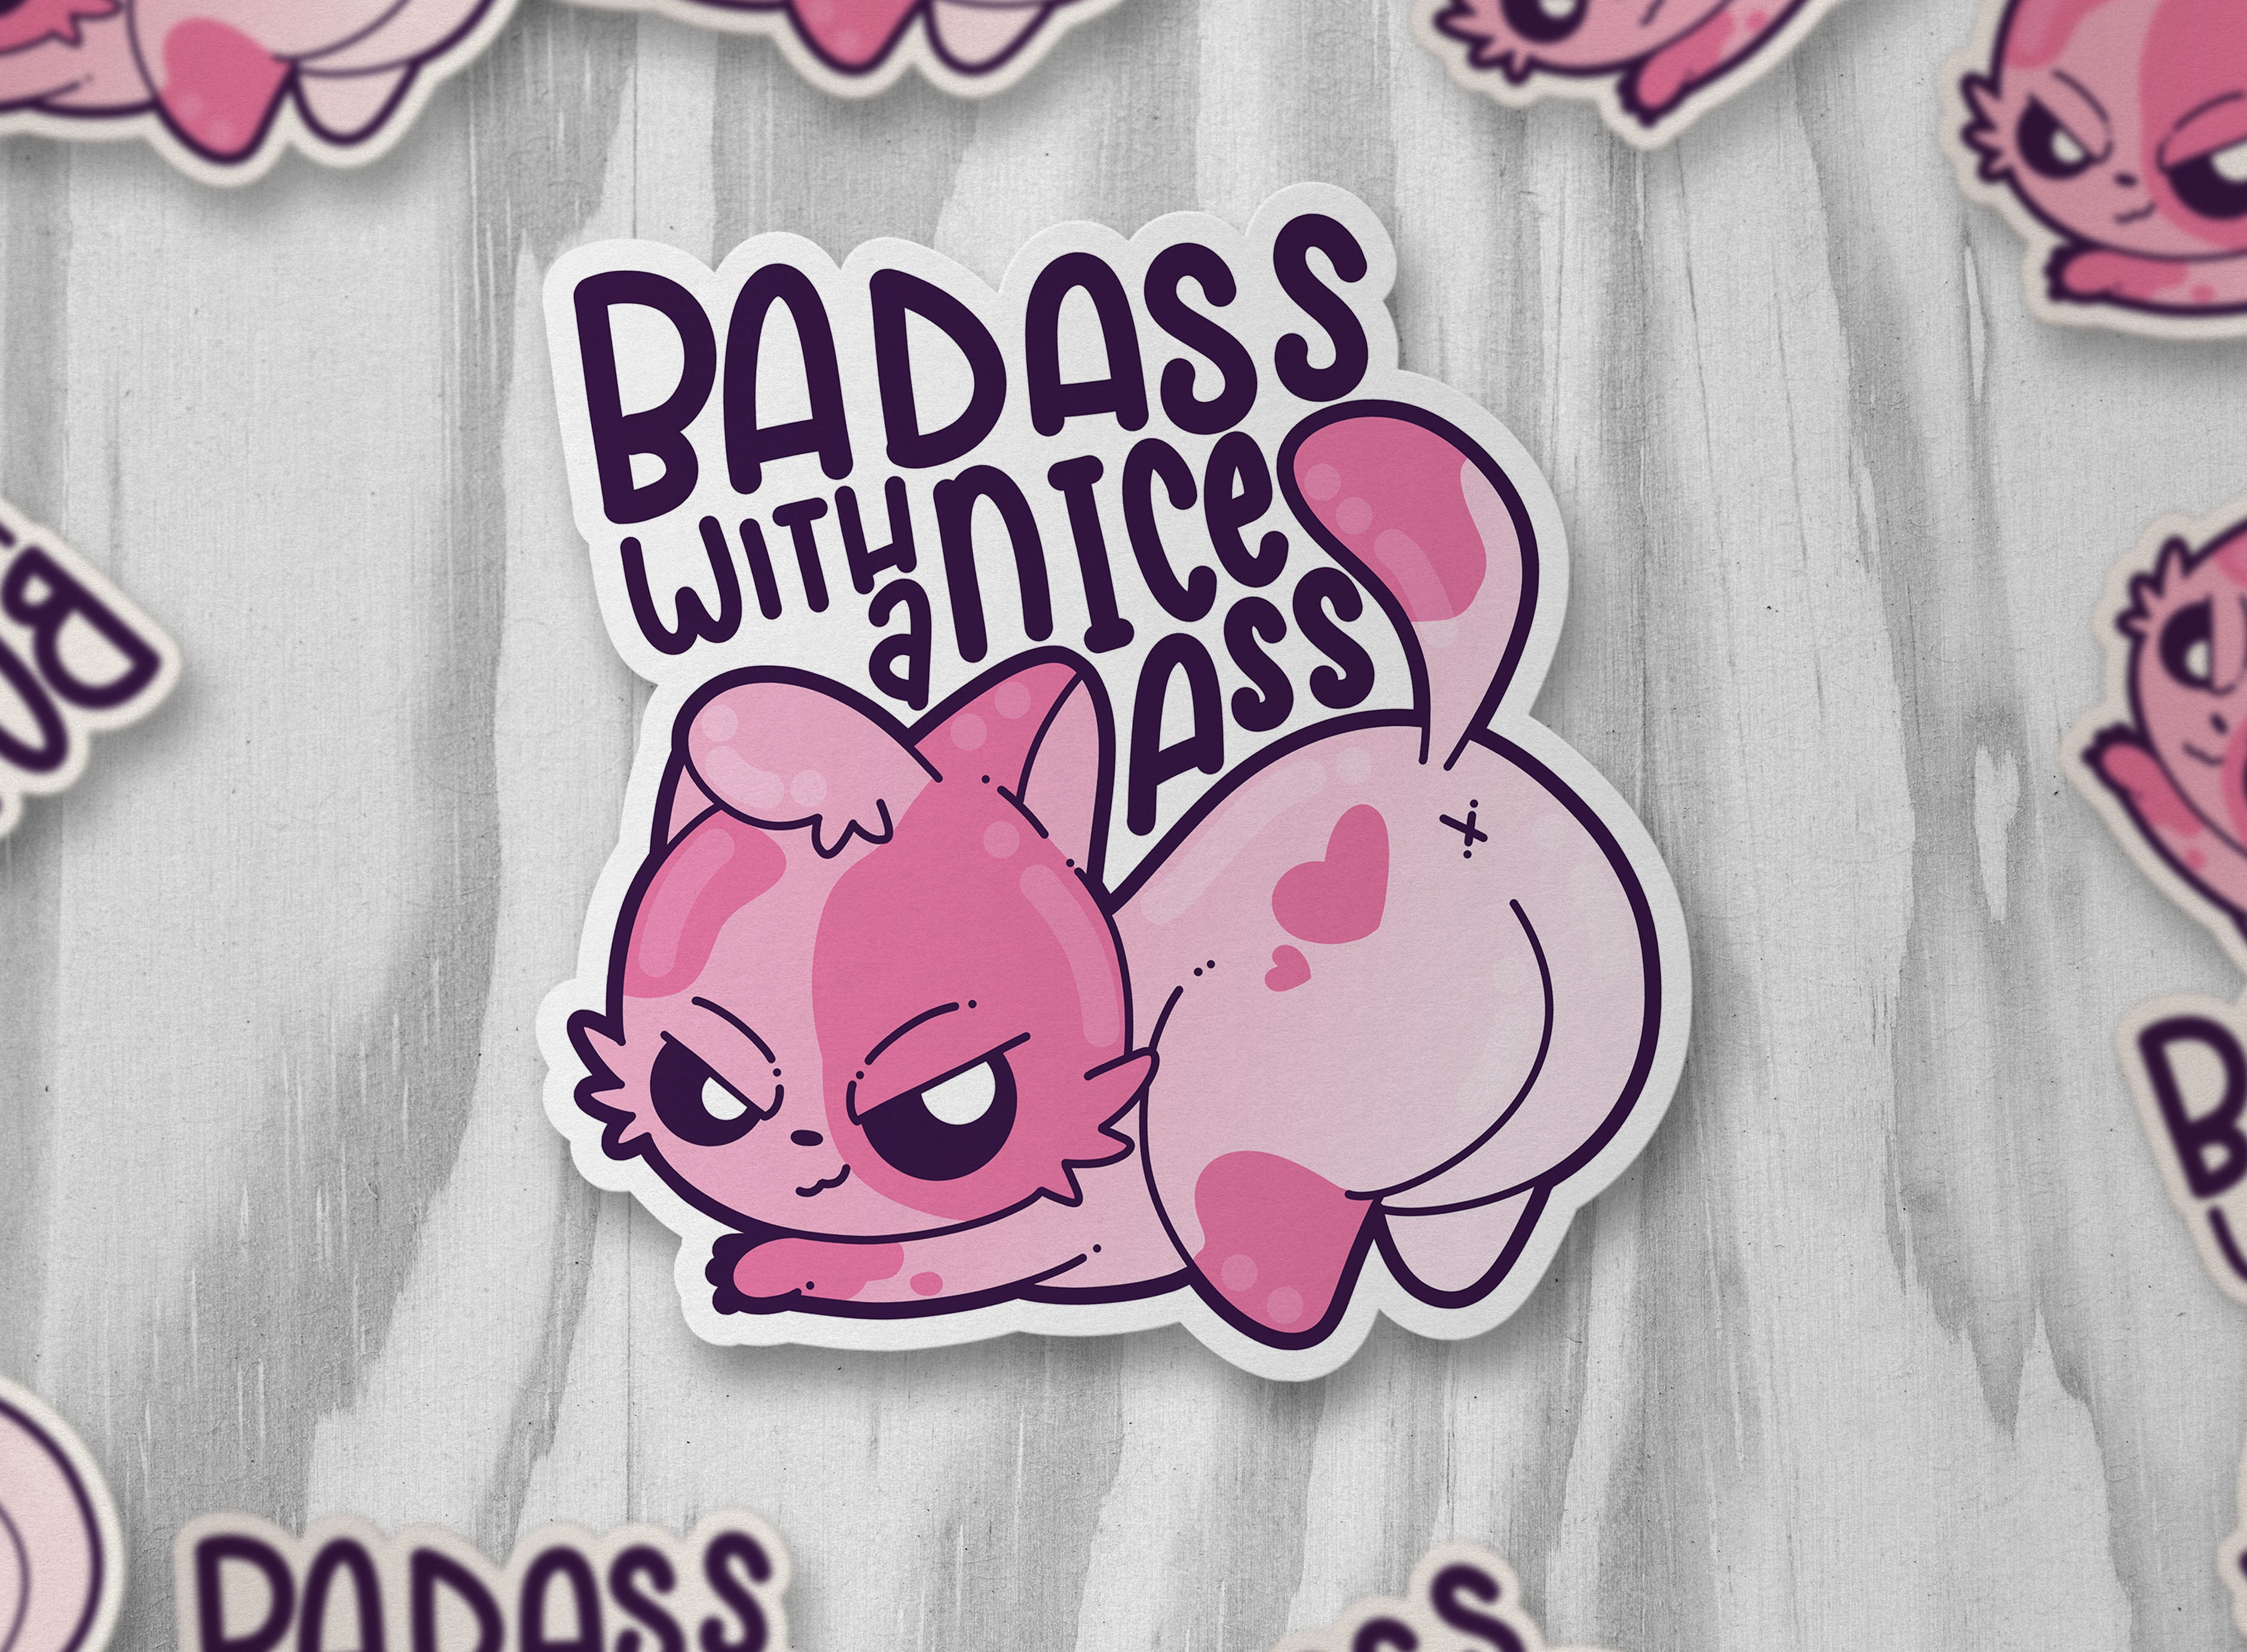 Badass with a Nice Ass - ChubbleGumLLC